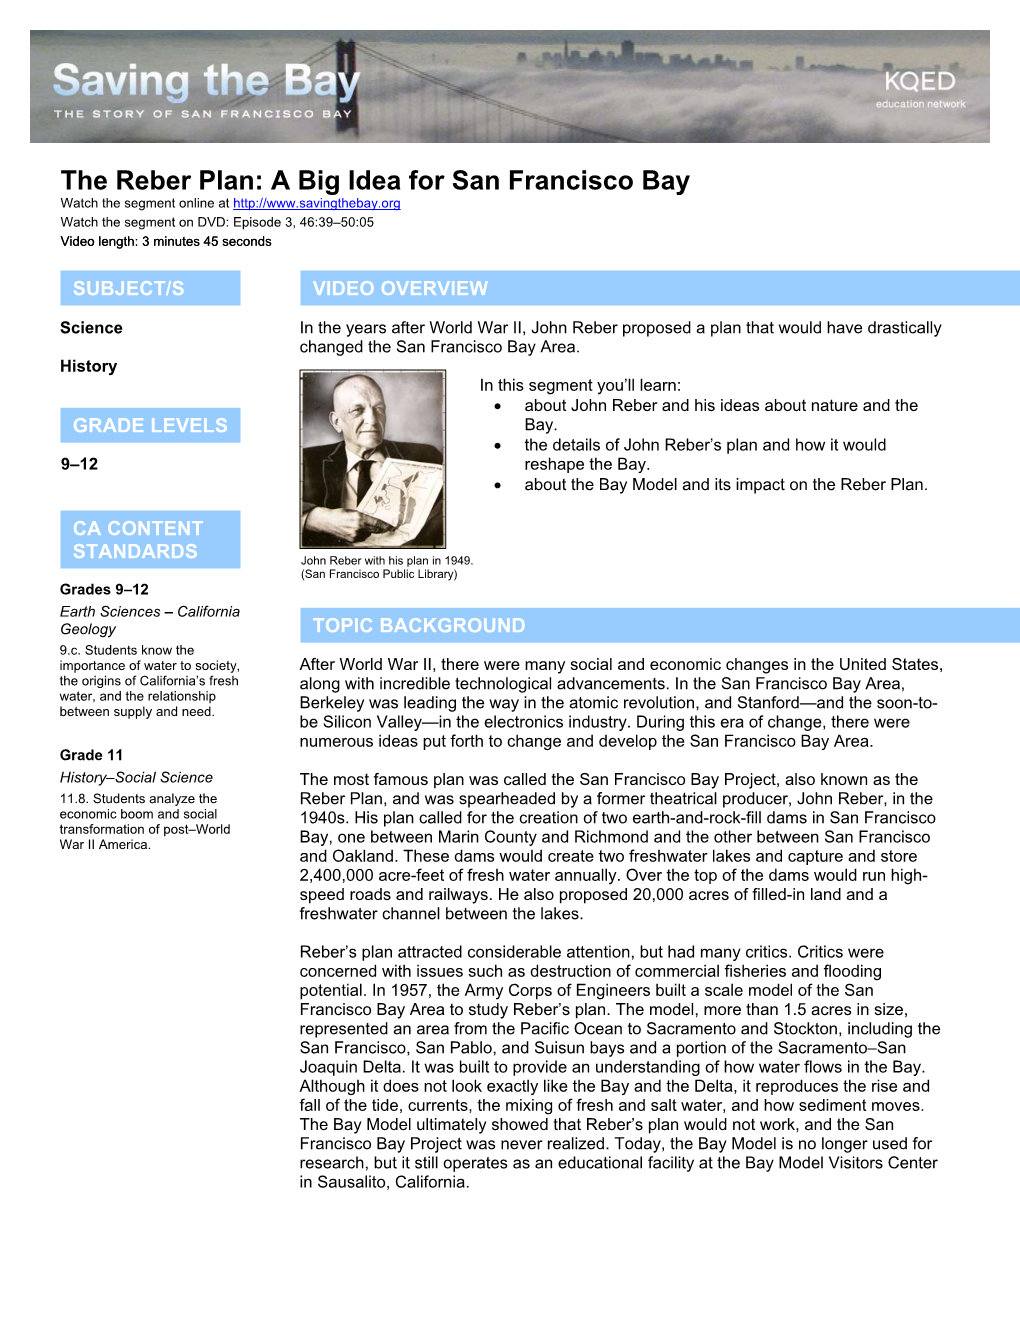 The Reber Plan: a Big Idea for San Francisco Bay